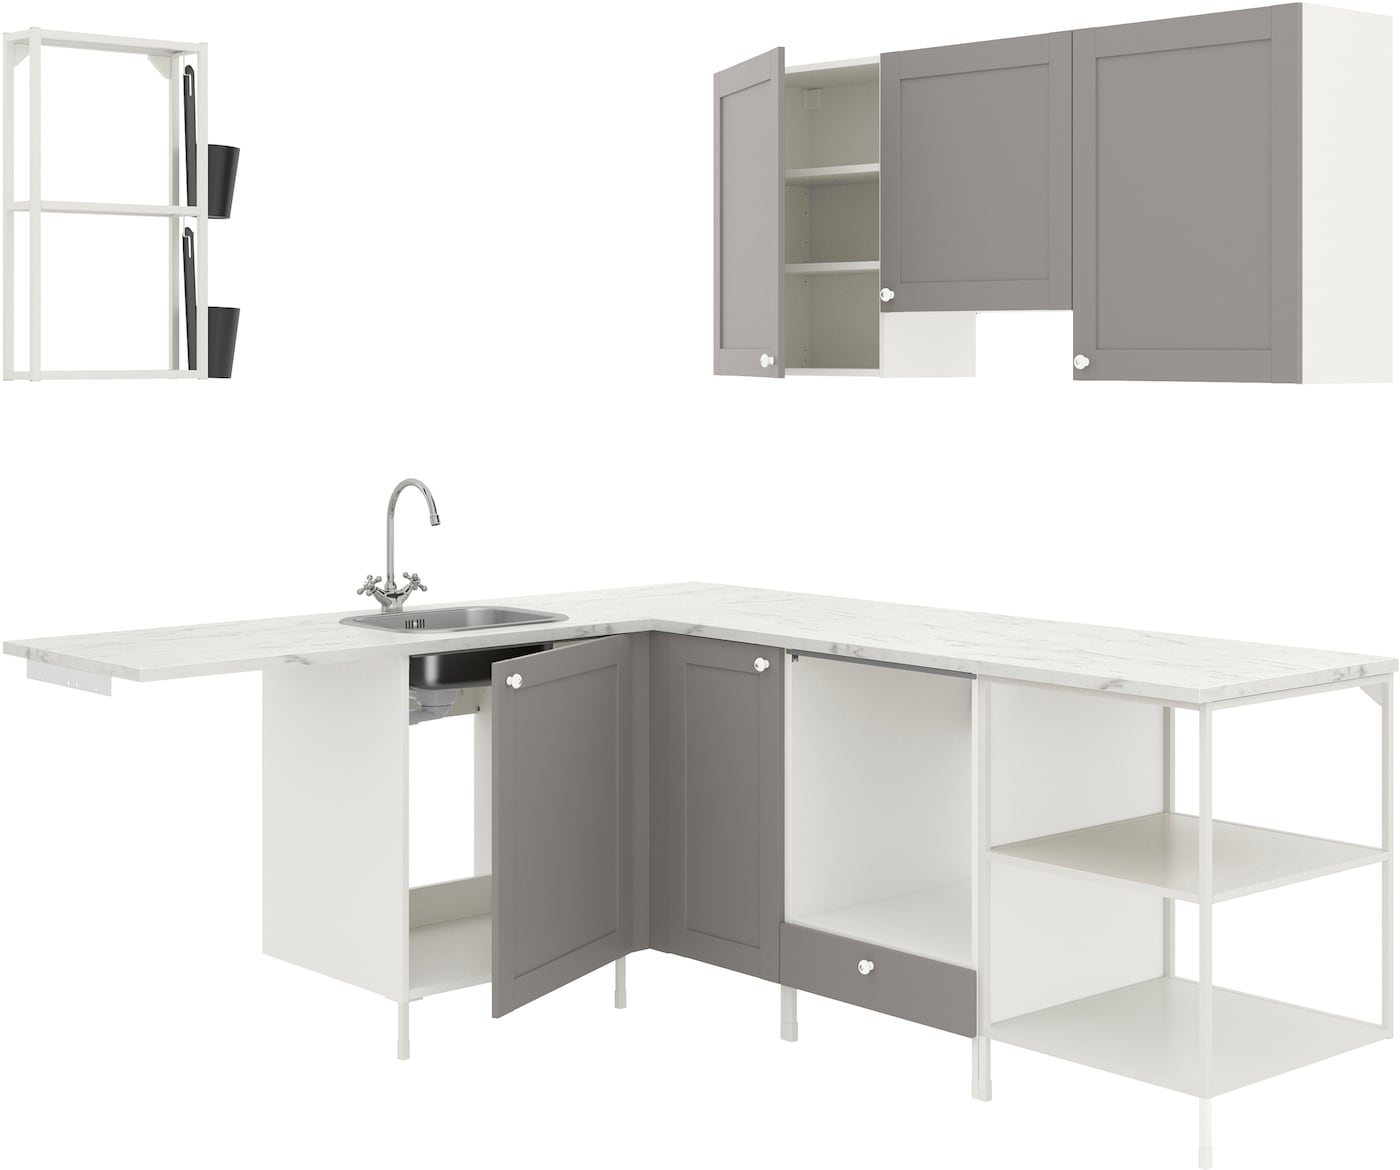 Угловой кухонный гарнитур - IKEA ENHET, 190.5х228.5х75 см, белый/серый, ЭНХЕТ ИКЕА